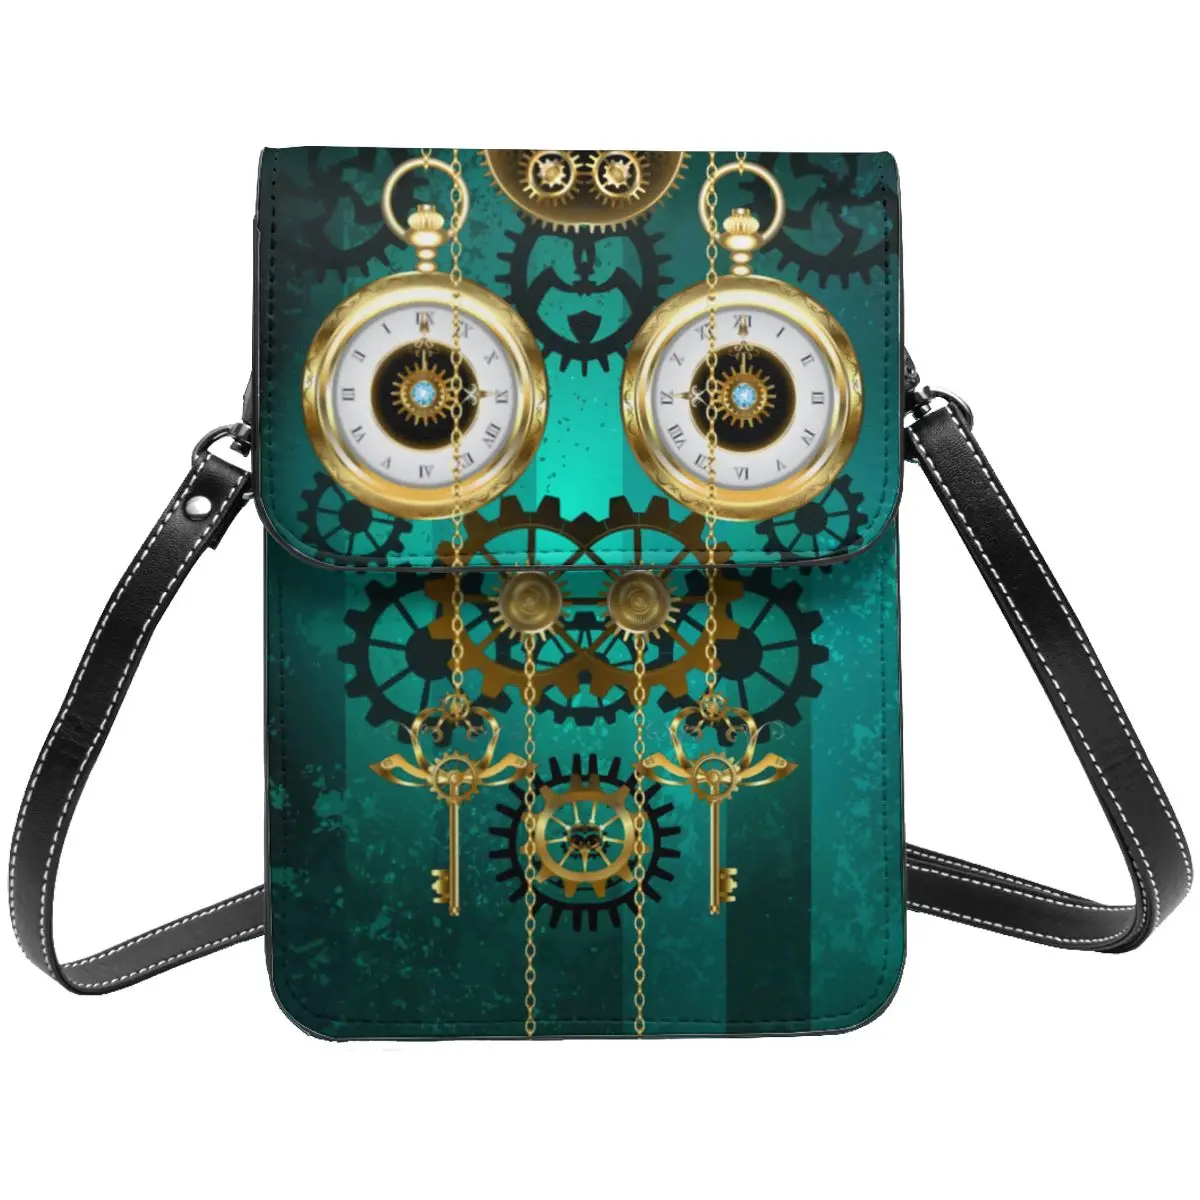 

Ювелирные изделия в стиле стимпанк, наплечная сумка с заводным принтом для путешествий, Студенческая дизайнерская сумка, кожаные сумки в стиле ретро